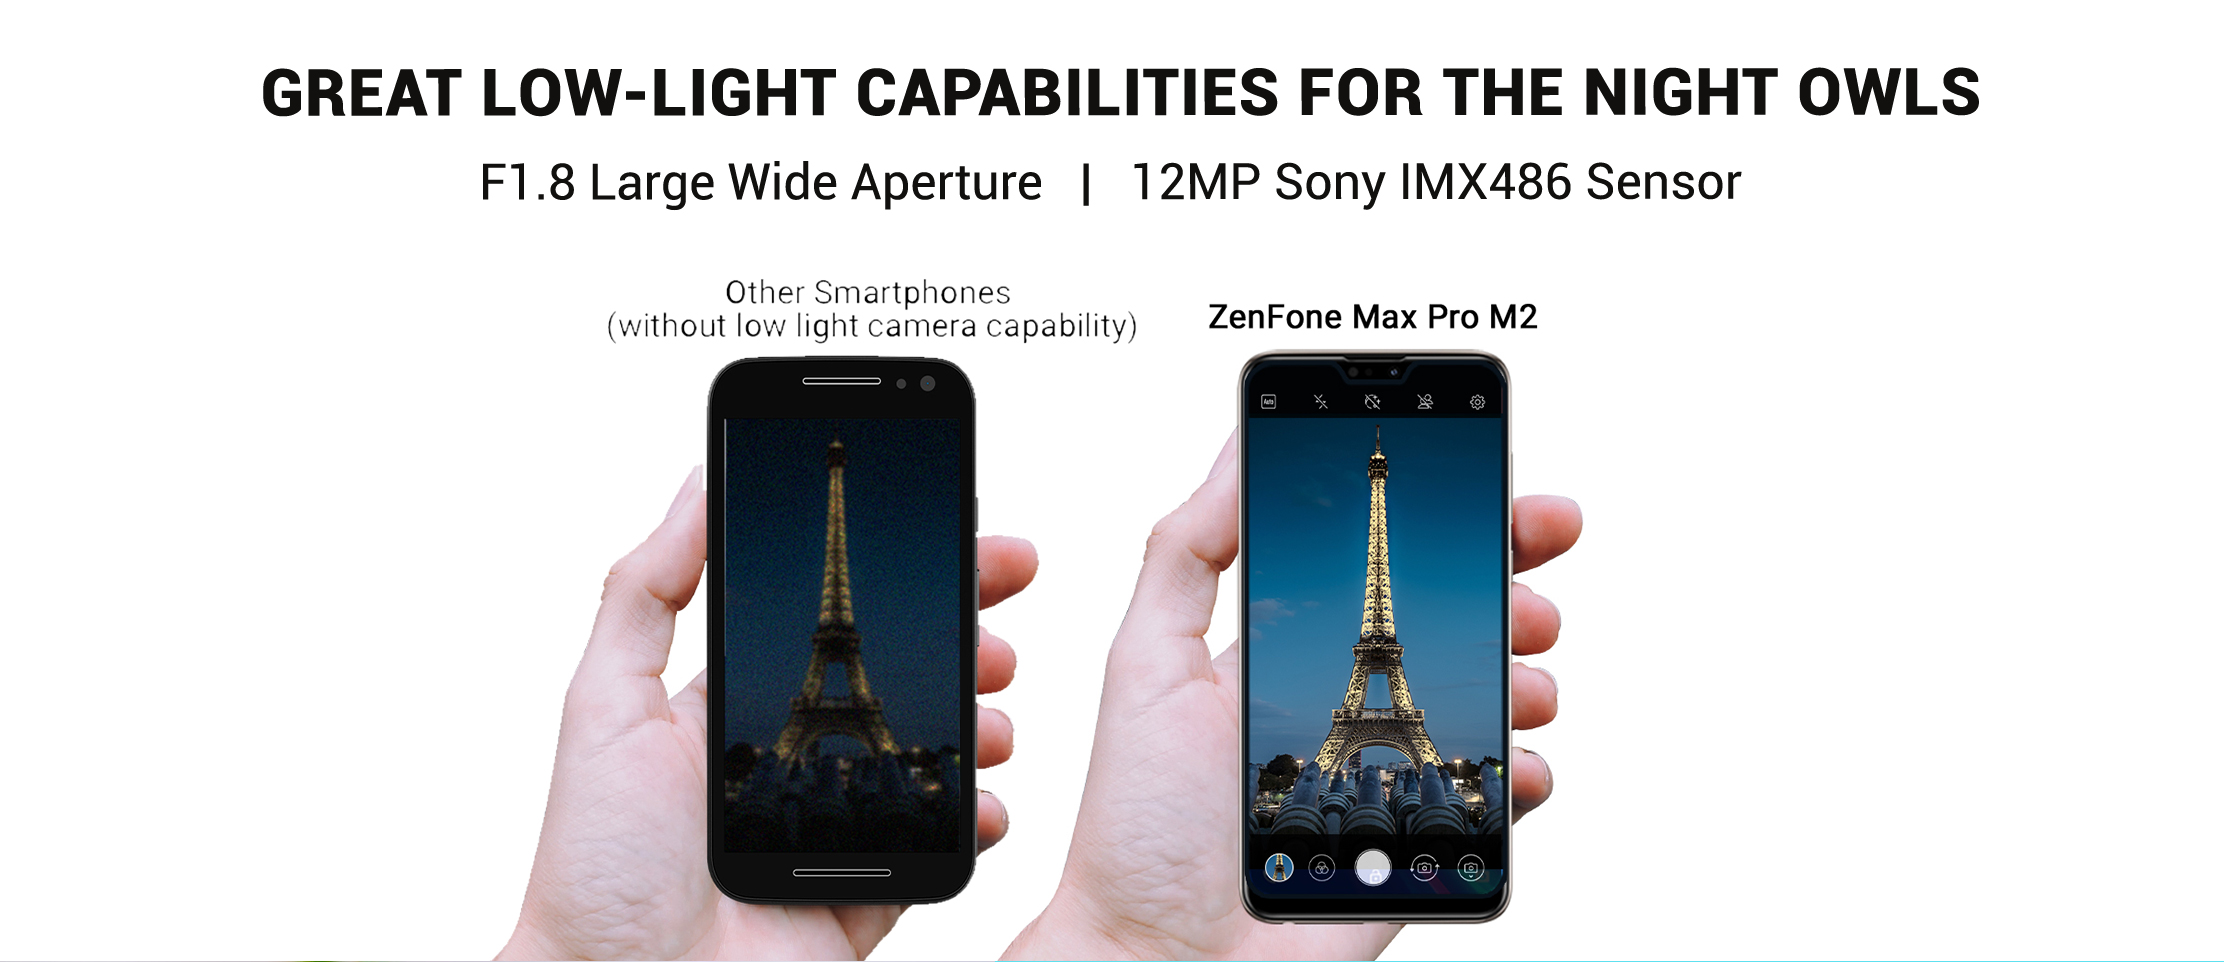 Pro zenfone m2 max ASUS ZenFone